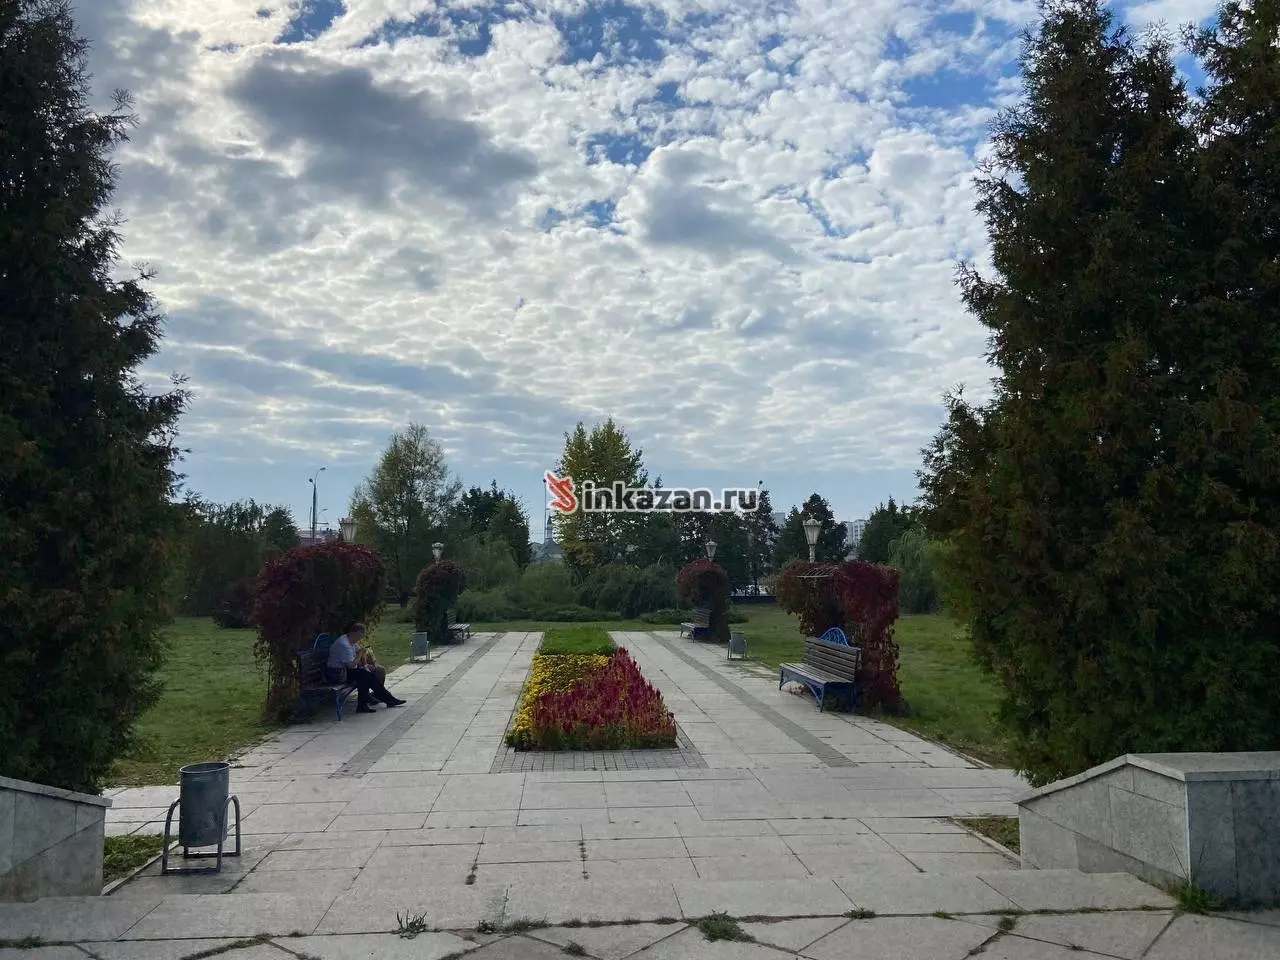 Из развлечений в парке есть лишь лавочки, фонтан и памятник Кул Гали.